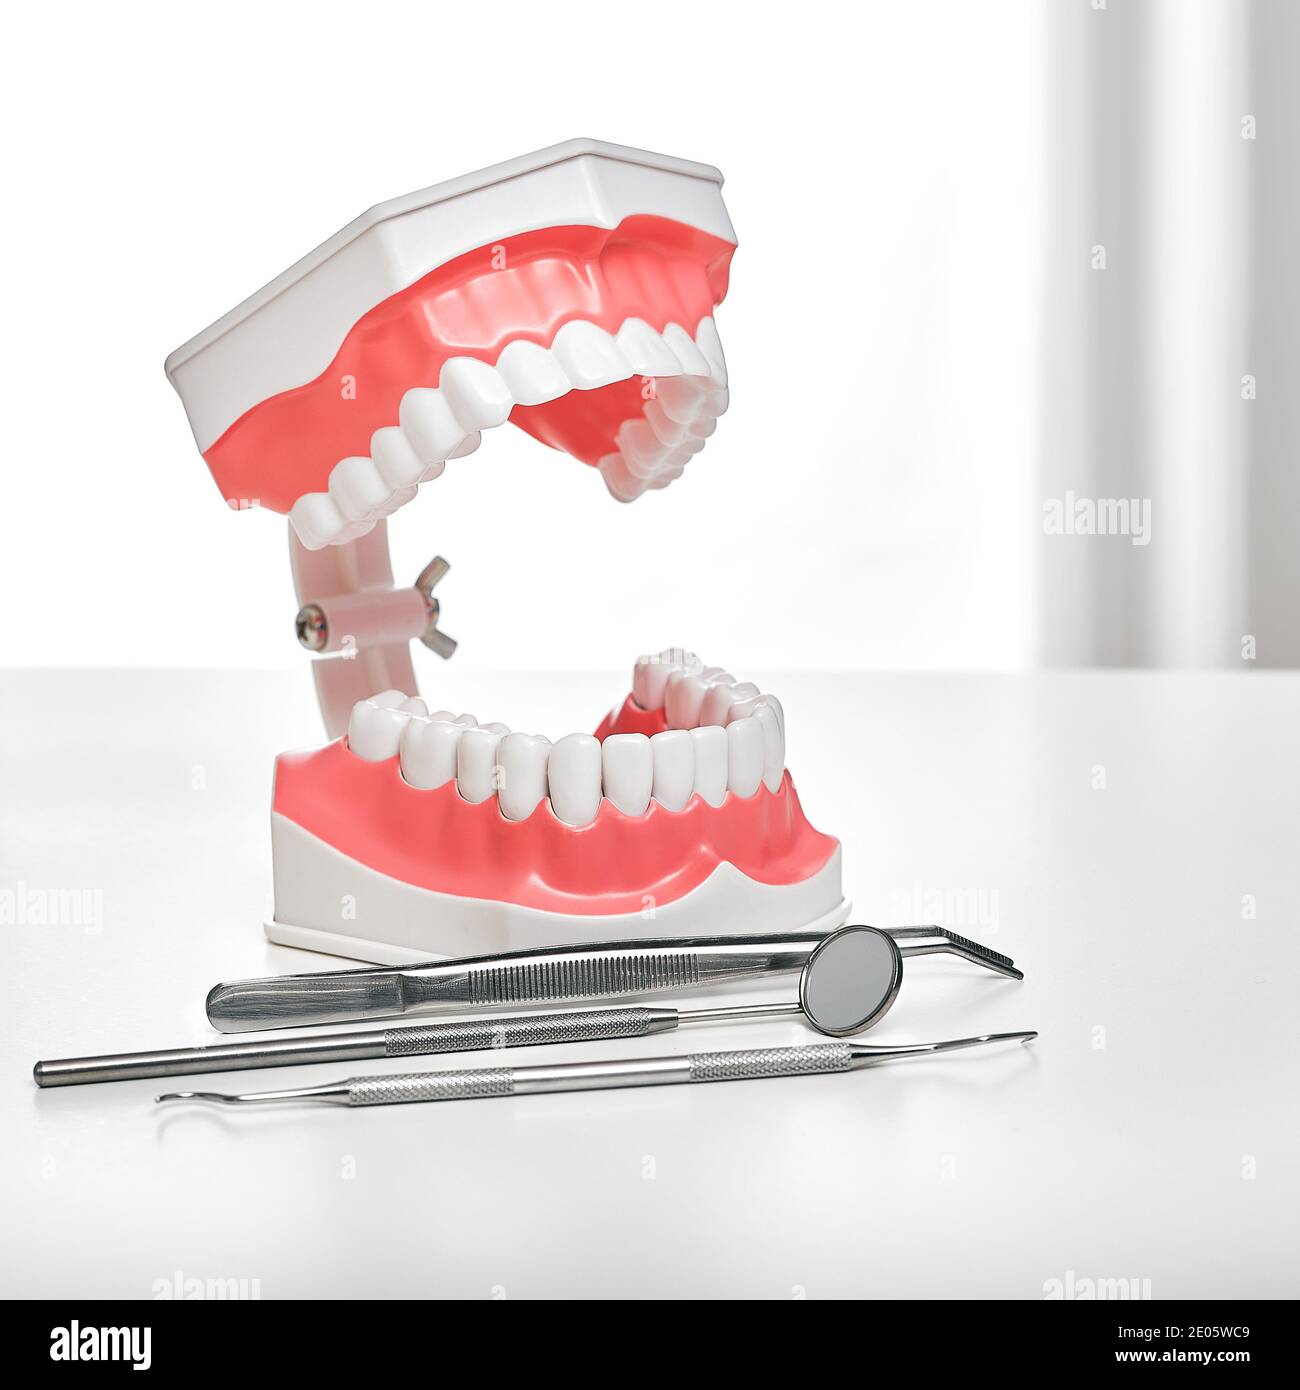 Stomatology et le concept de traitement dentaire. Modèle anatomique des dents et des dispositifs médicaux sur la table du dentiste, gros plan Banque D'Images